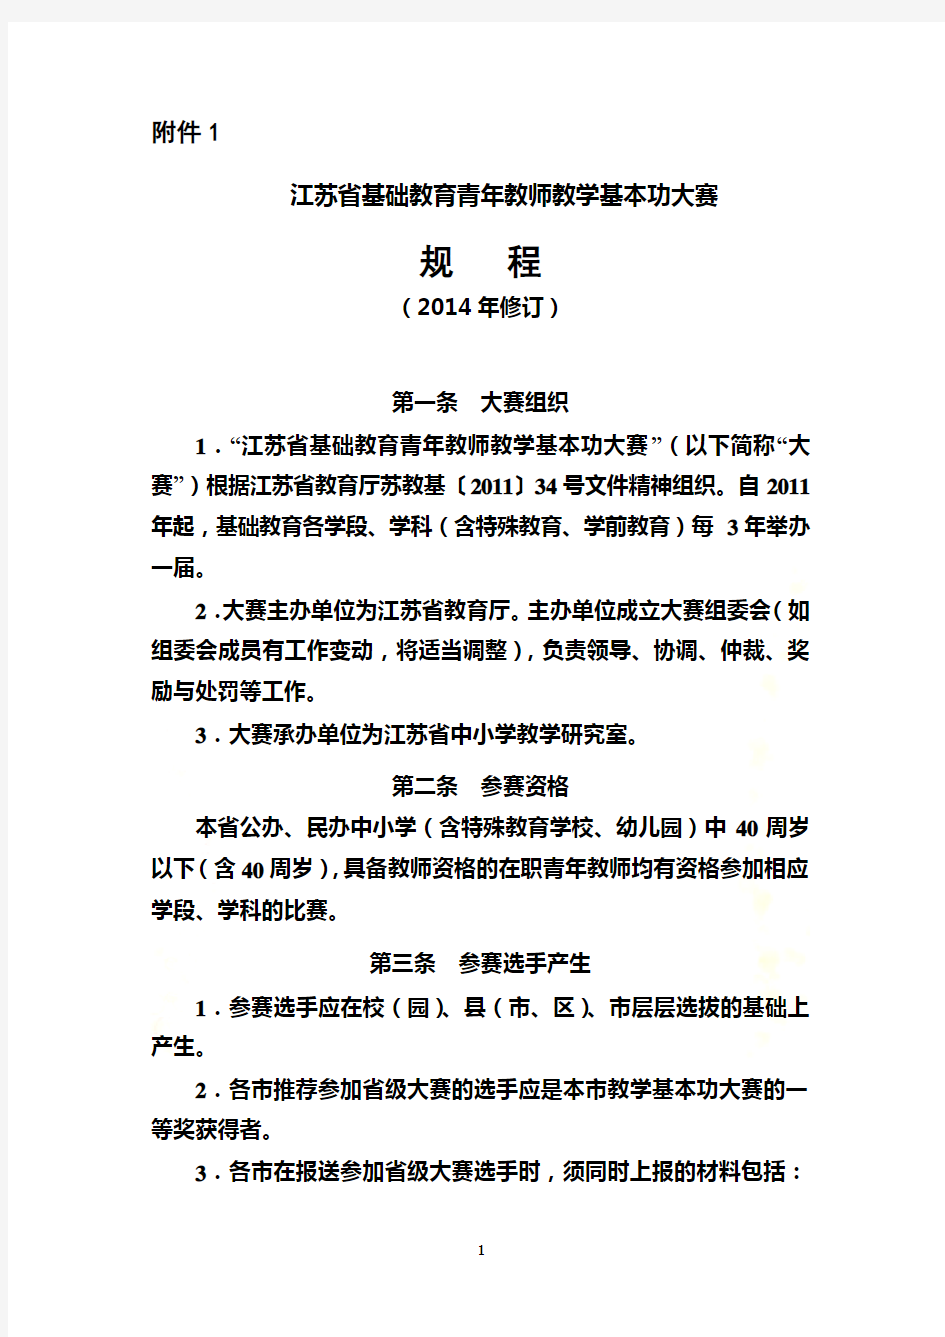 1.江苏省基础教育青年教师教学基本功大赛比赛规程(2014年修订)